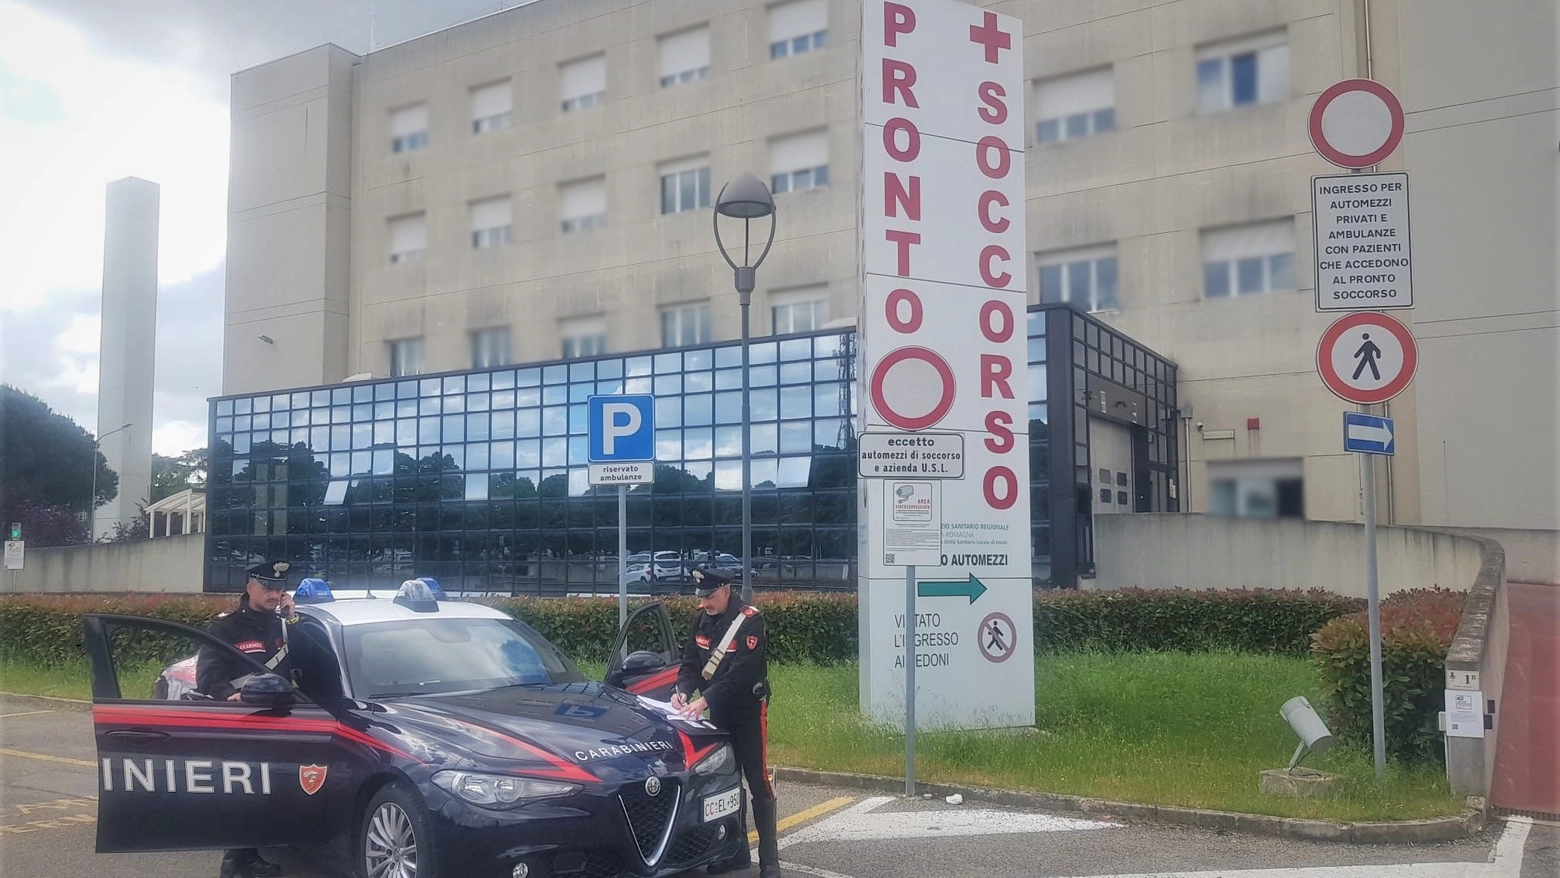 Intervenuti i carabinieri al pronto soccorso di Imola per aggressione a un medico